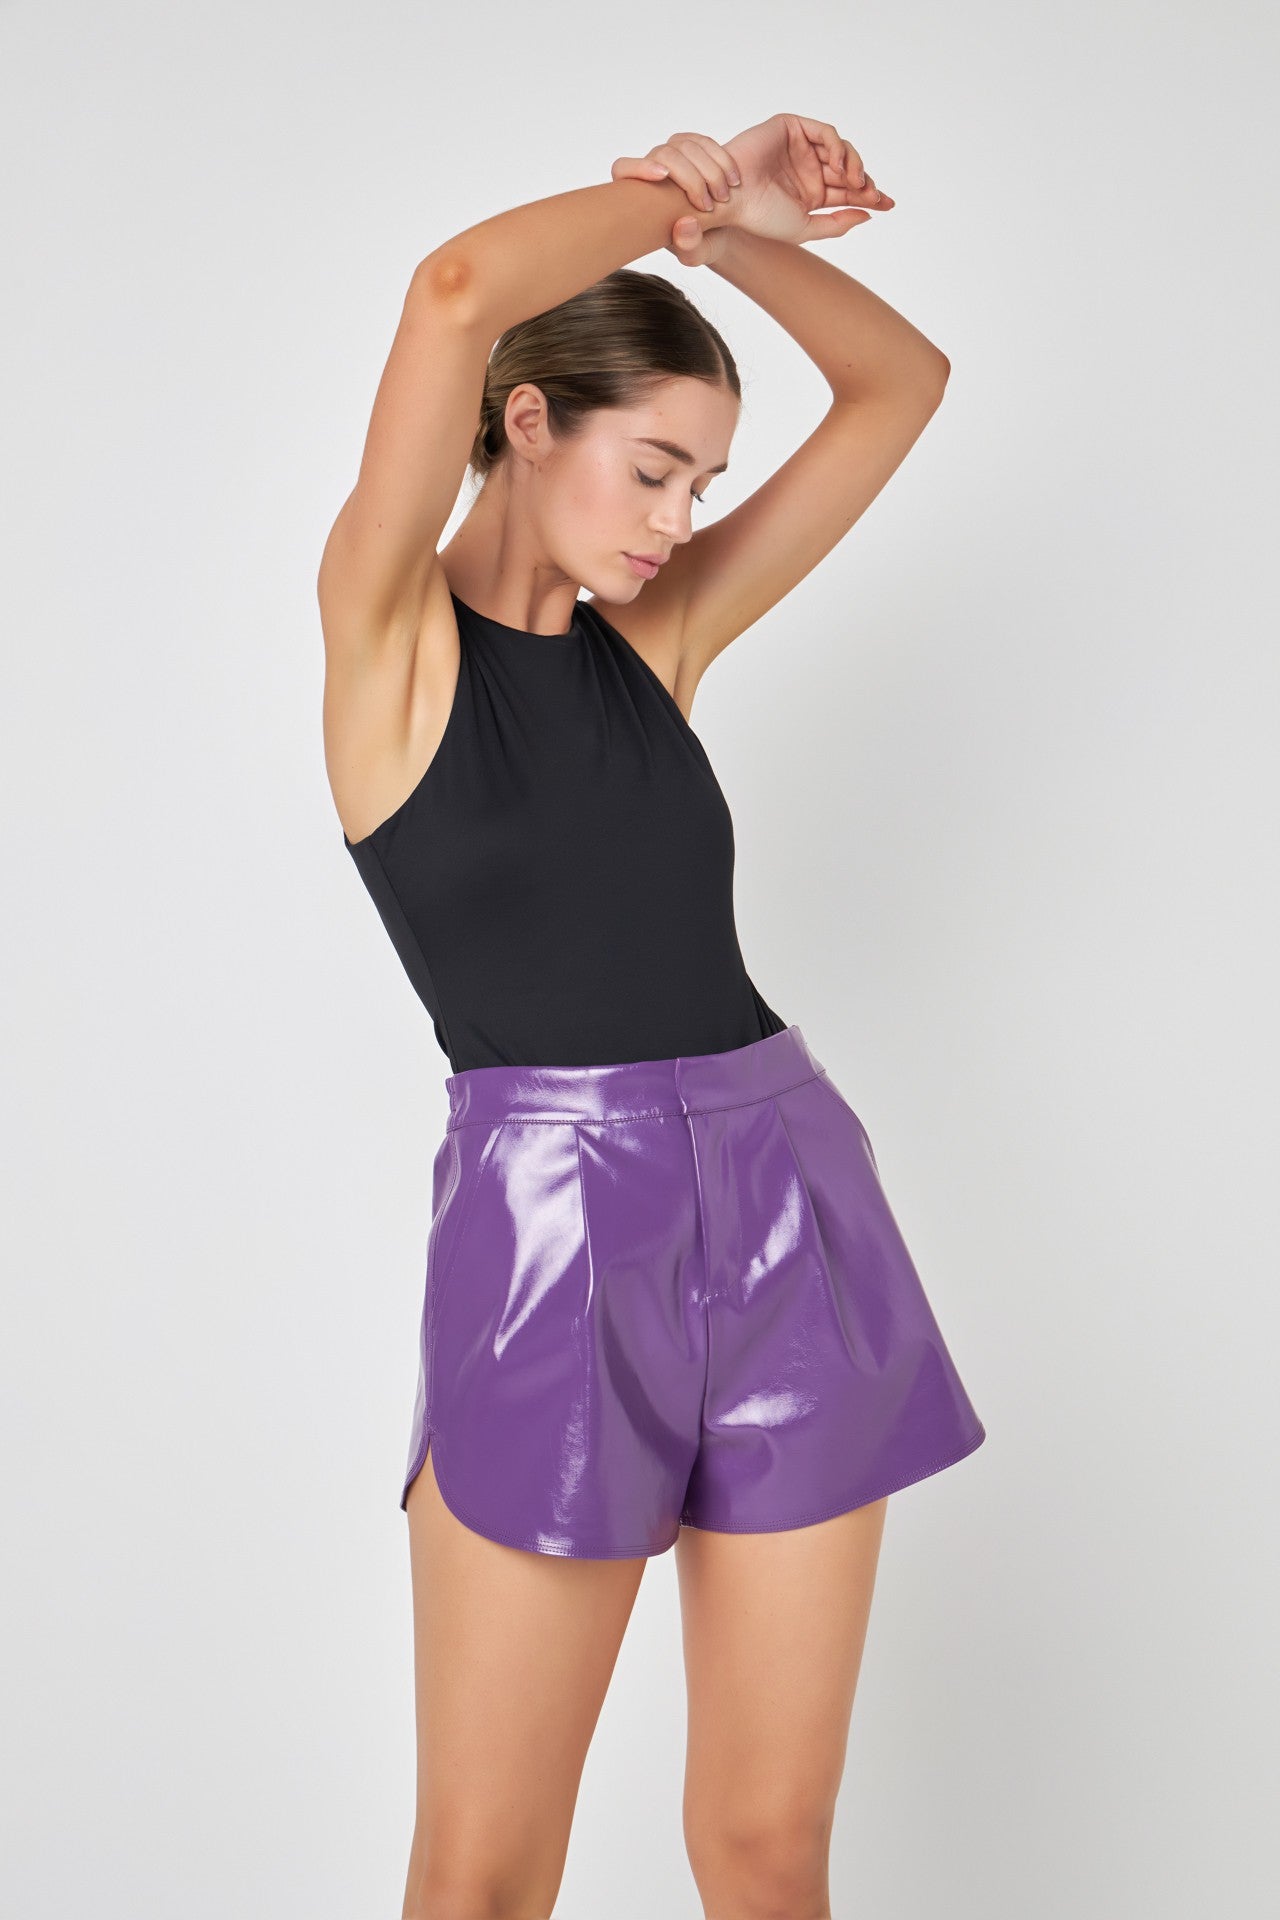 Sydney Shorts